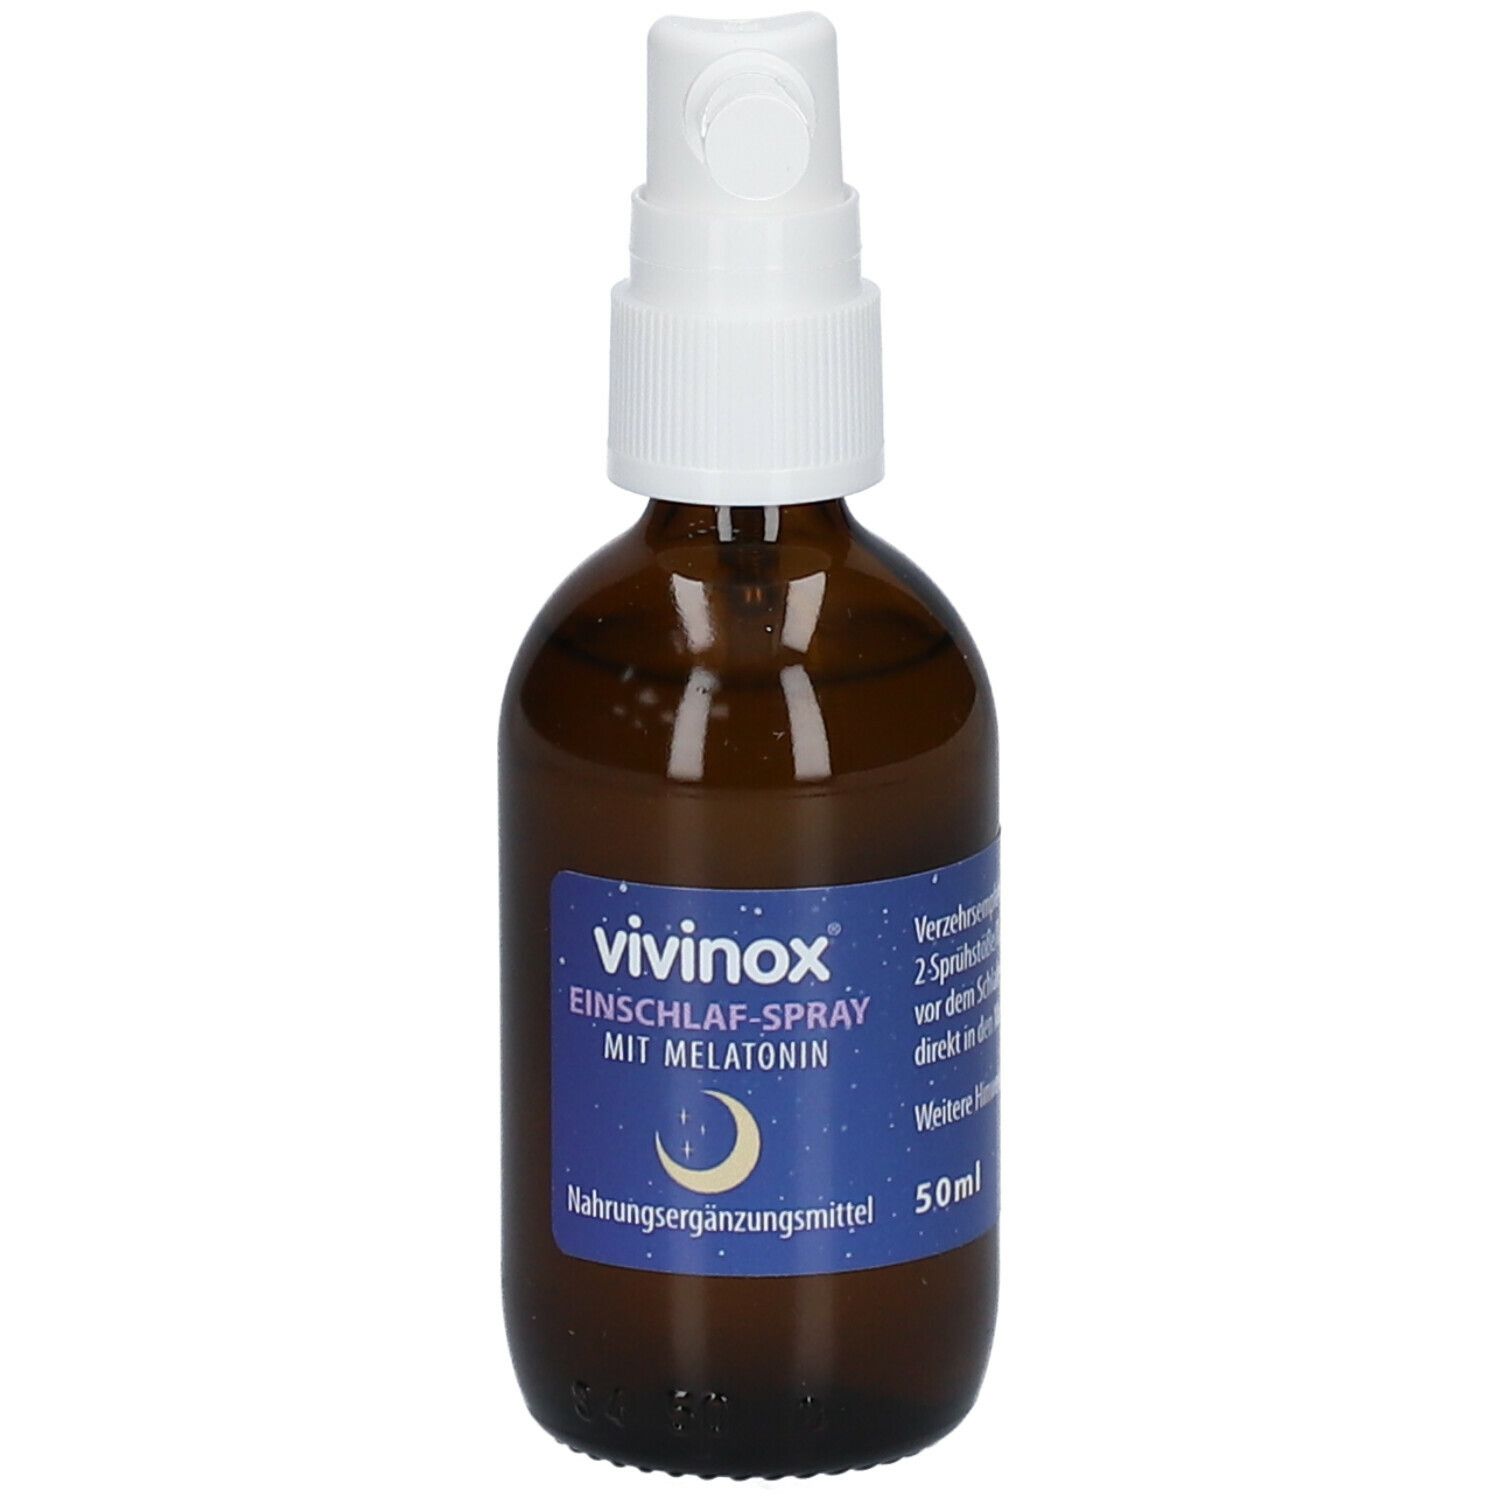 vivinox® Einschlaf-Spray mit Melatonin